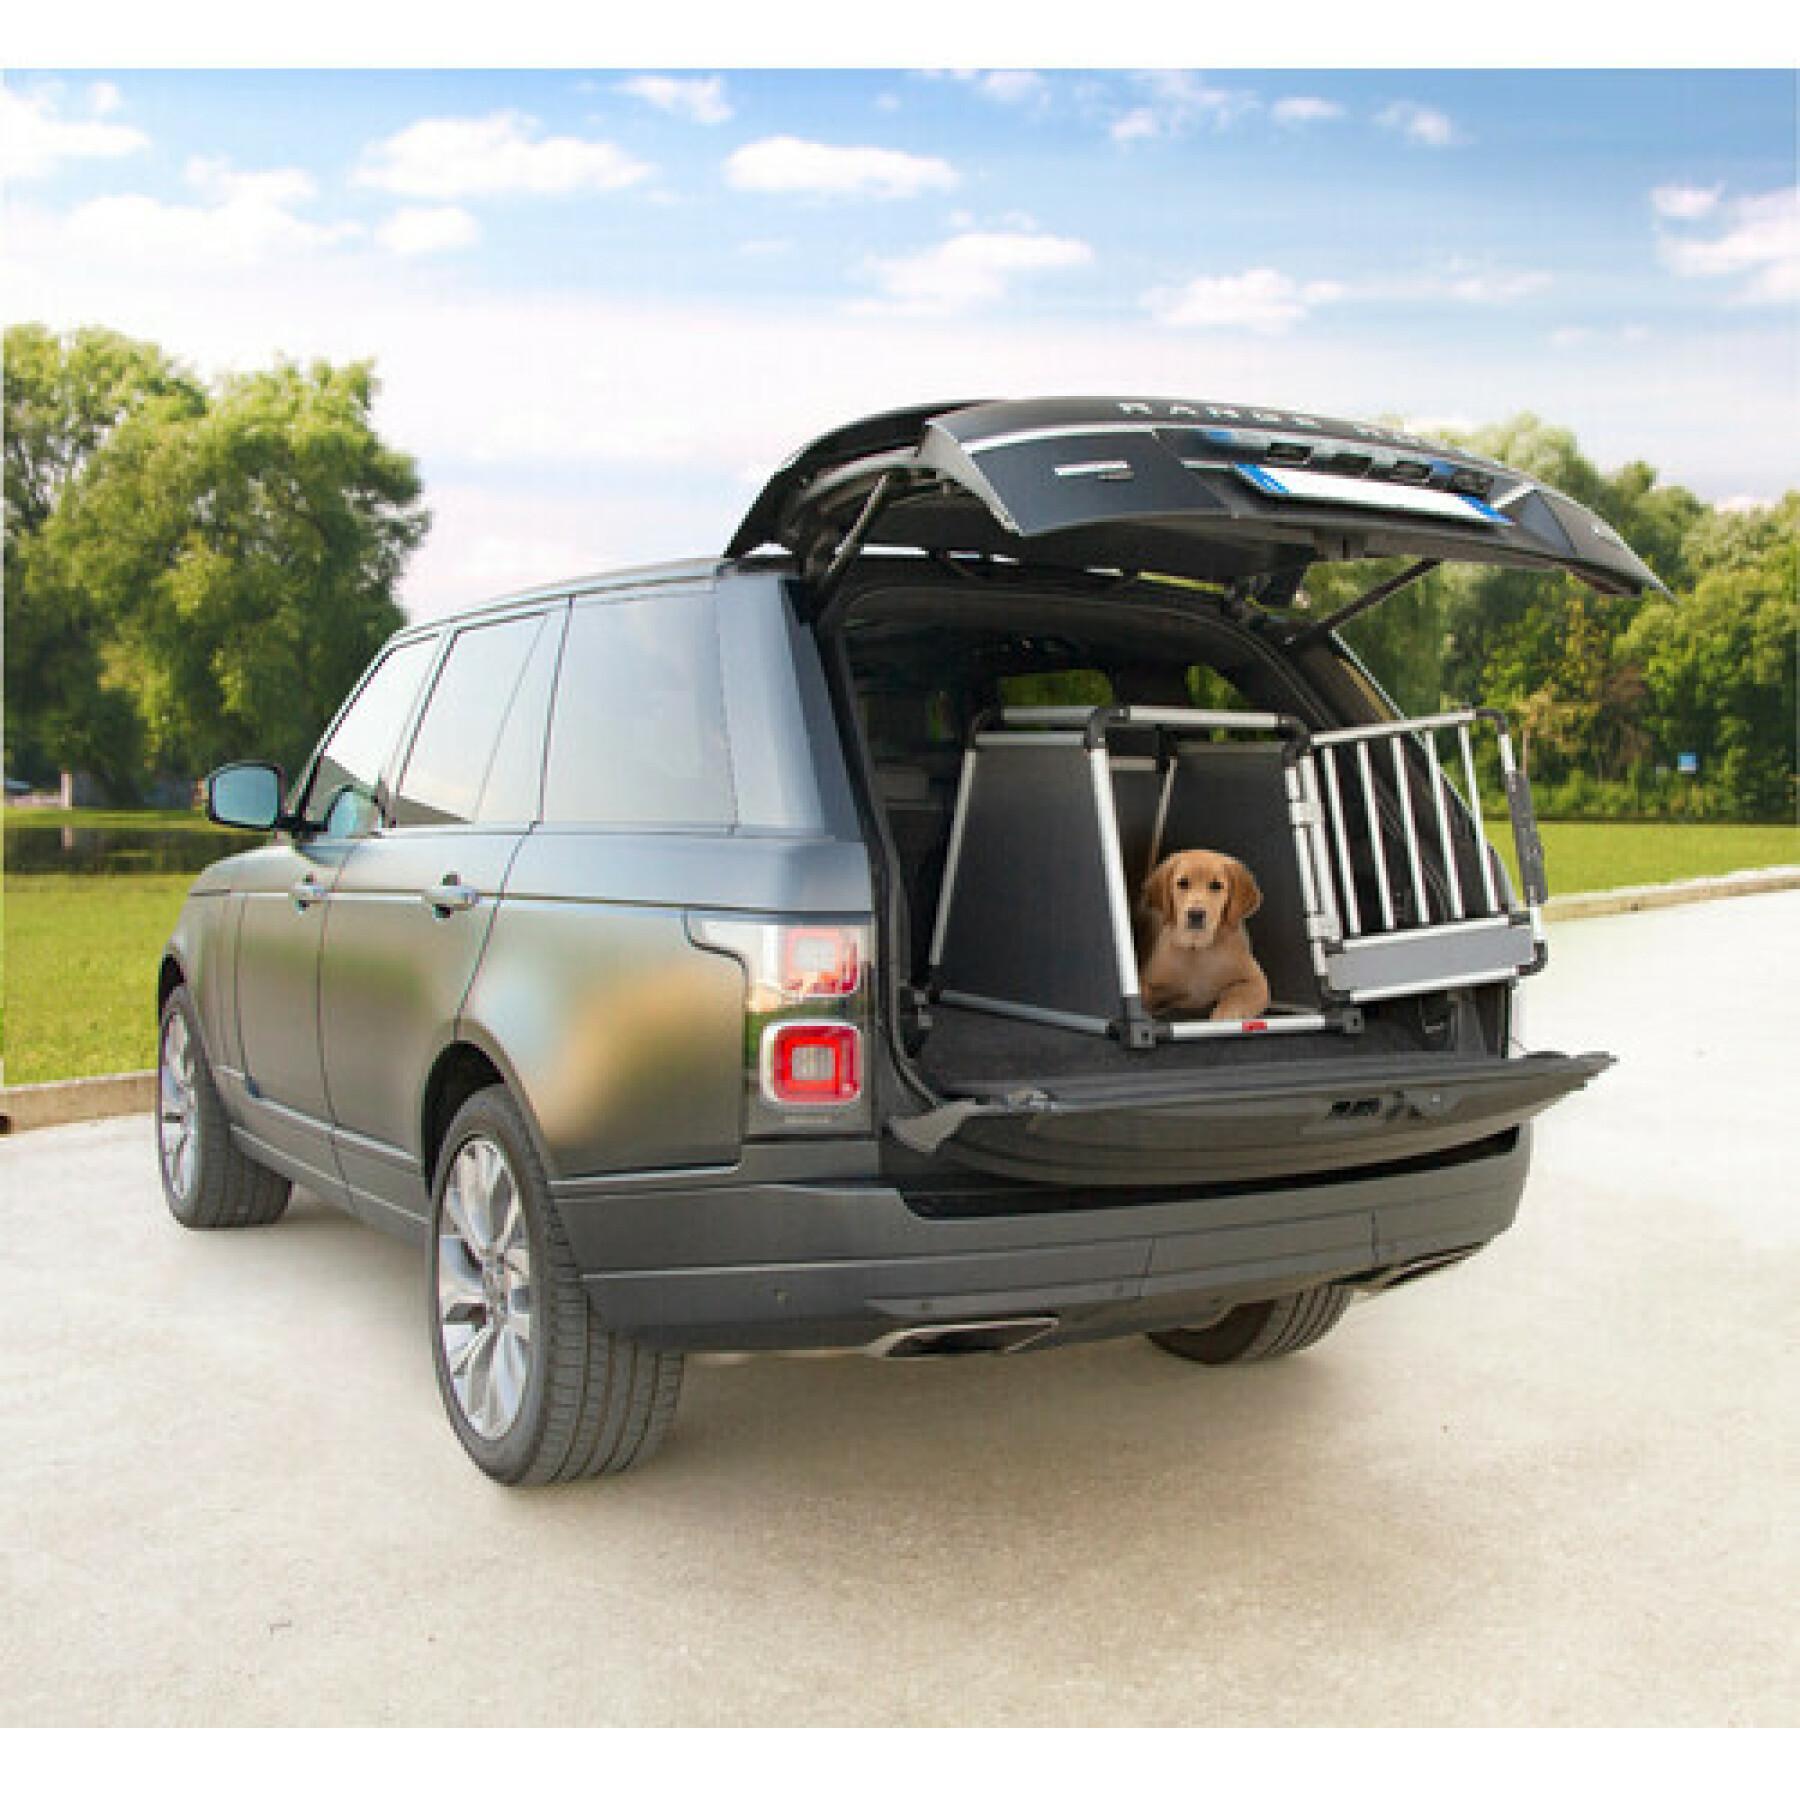 Klatka transportowa dla zwierząt w samochodzie - typ Lampa Premium